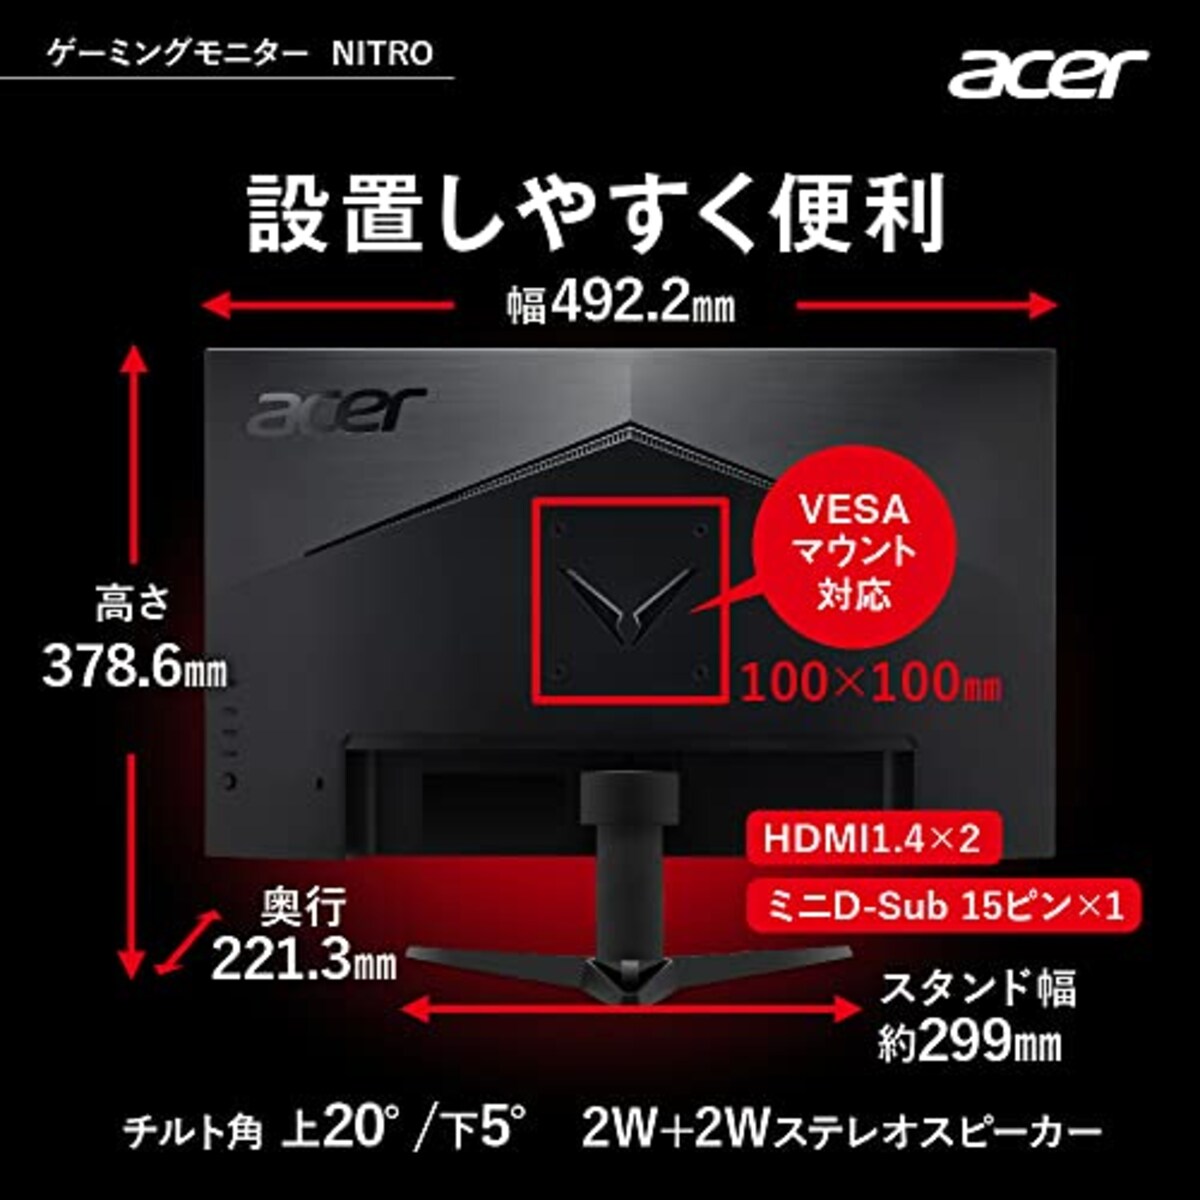  日本エイサー 【Amazon.co.jp限定】 Acer Nitro ゲーミングモニター 21.5インチ VA 非光沢 フルHD 100Hz 1ms(VRB) HDMI ミニD-Sub15 VESAマウント対応 スピーカー内蔵 ヘッドホン端子 AMD FreeSync QG221QHbmiix PC/PS4/Switch向き画像7 